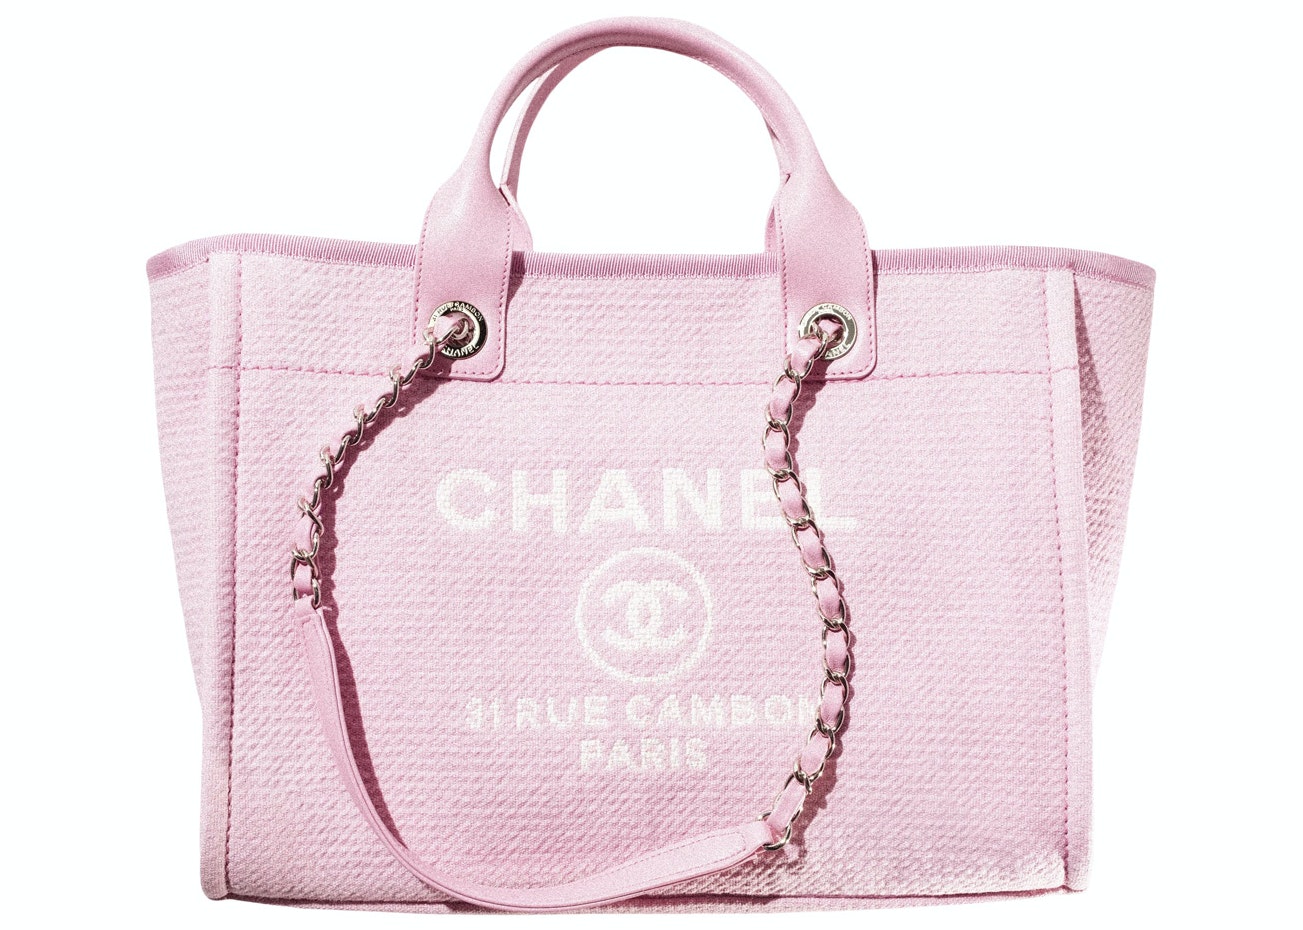 Chanel 19 Shopping Bag Pink  Nice Bag